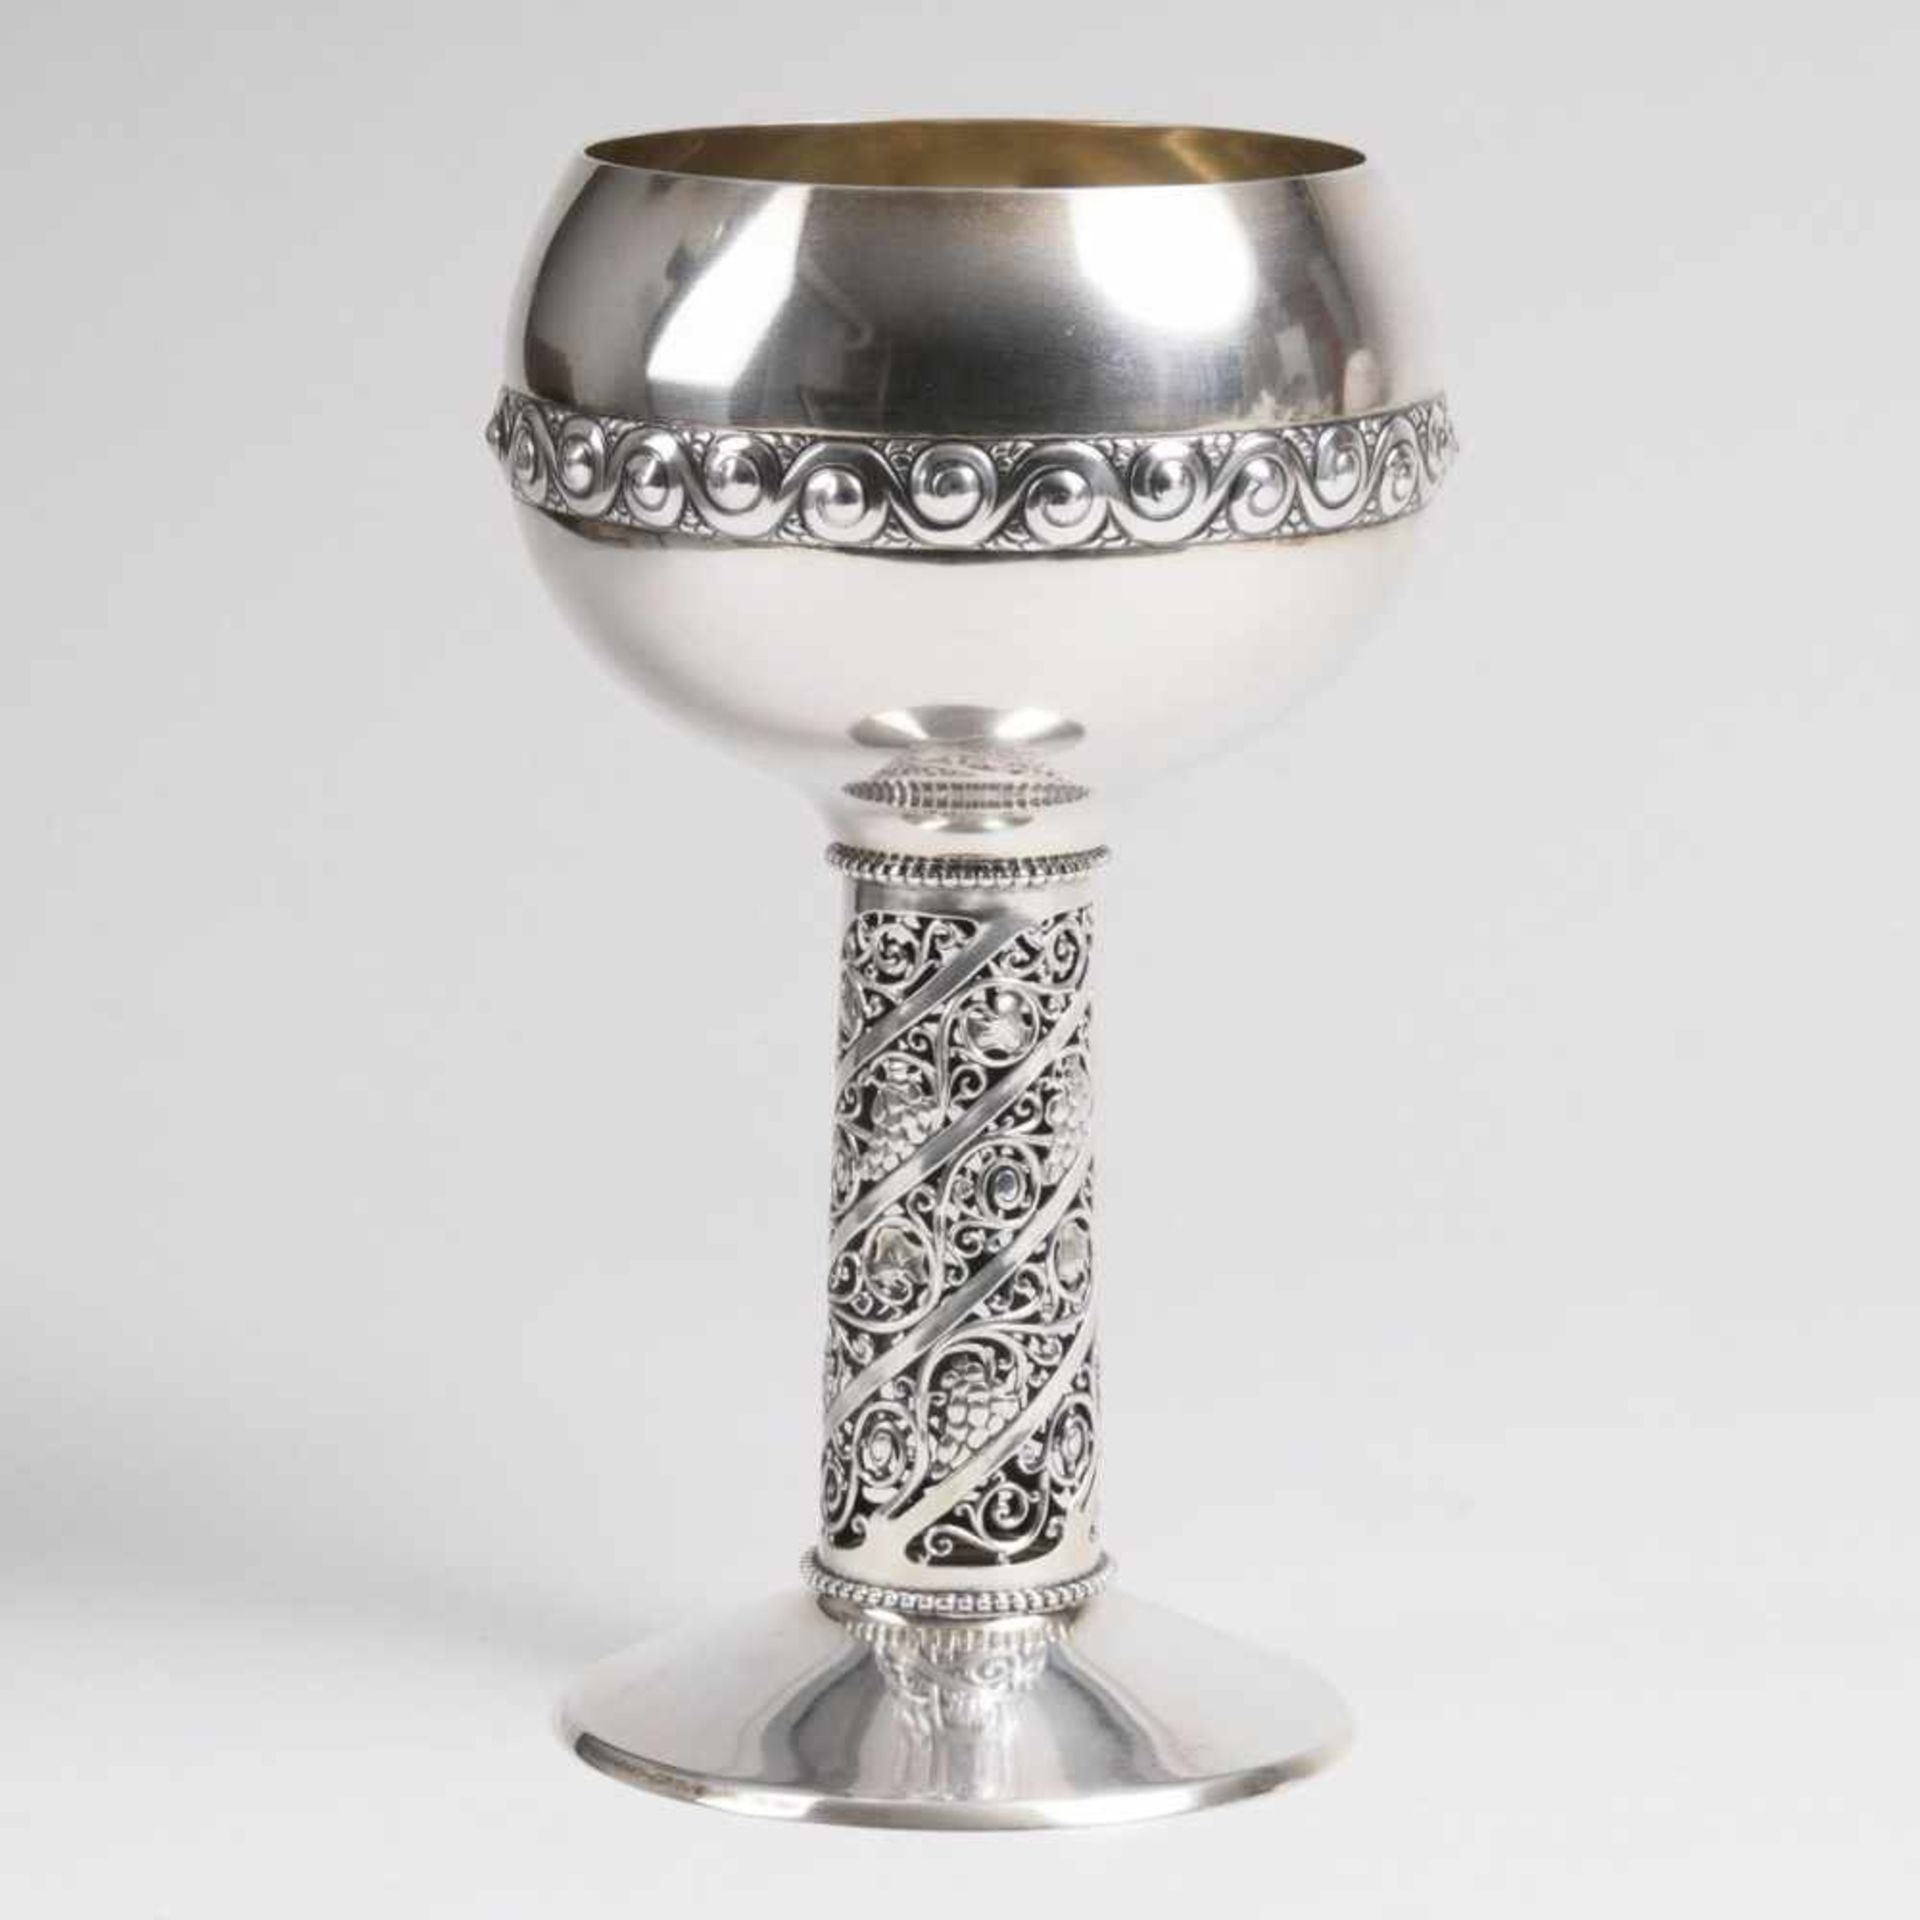 Jugendstil-Pokal mit Weinranken-SchaftDeutschland, um 1900. Silber, gest. BZ., '800', MZ.: 'O.